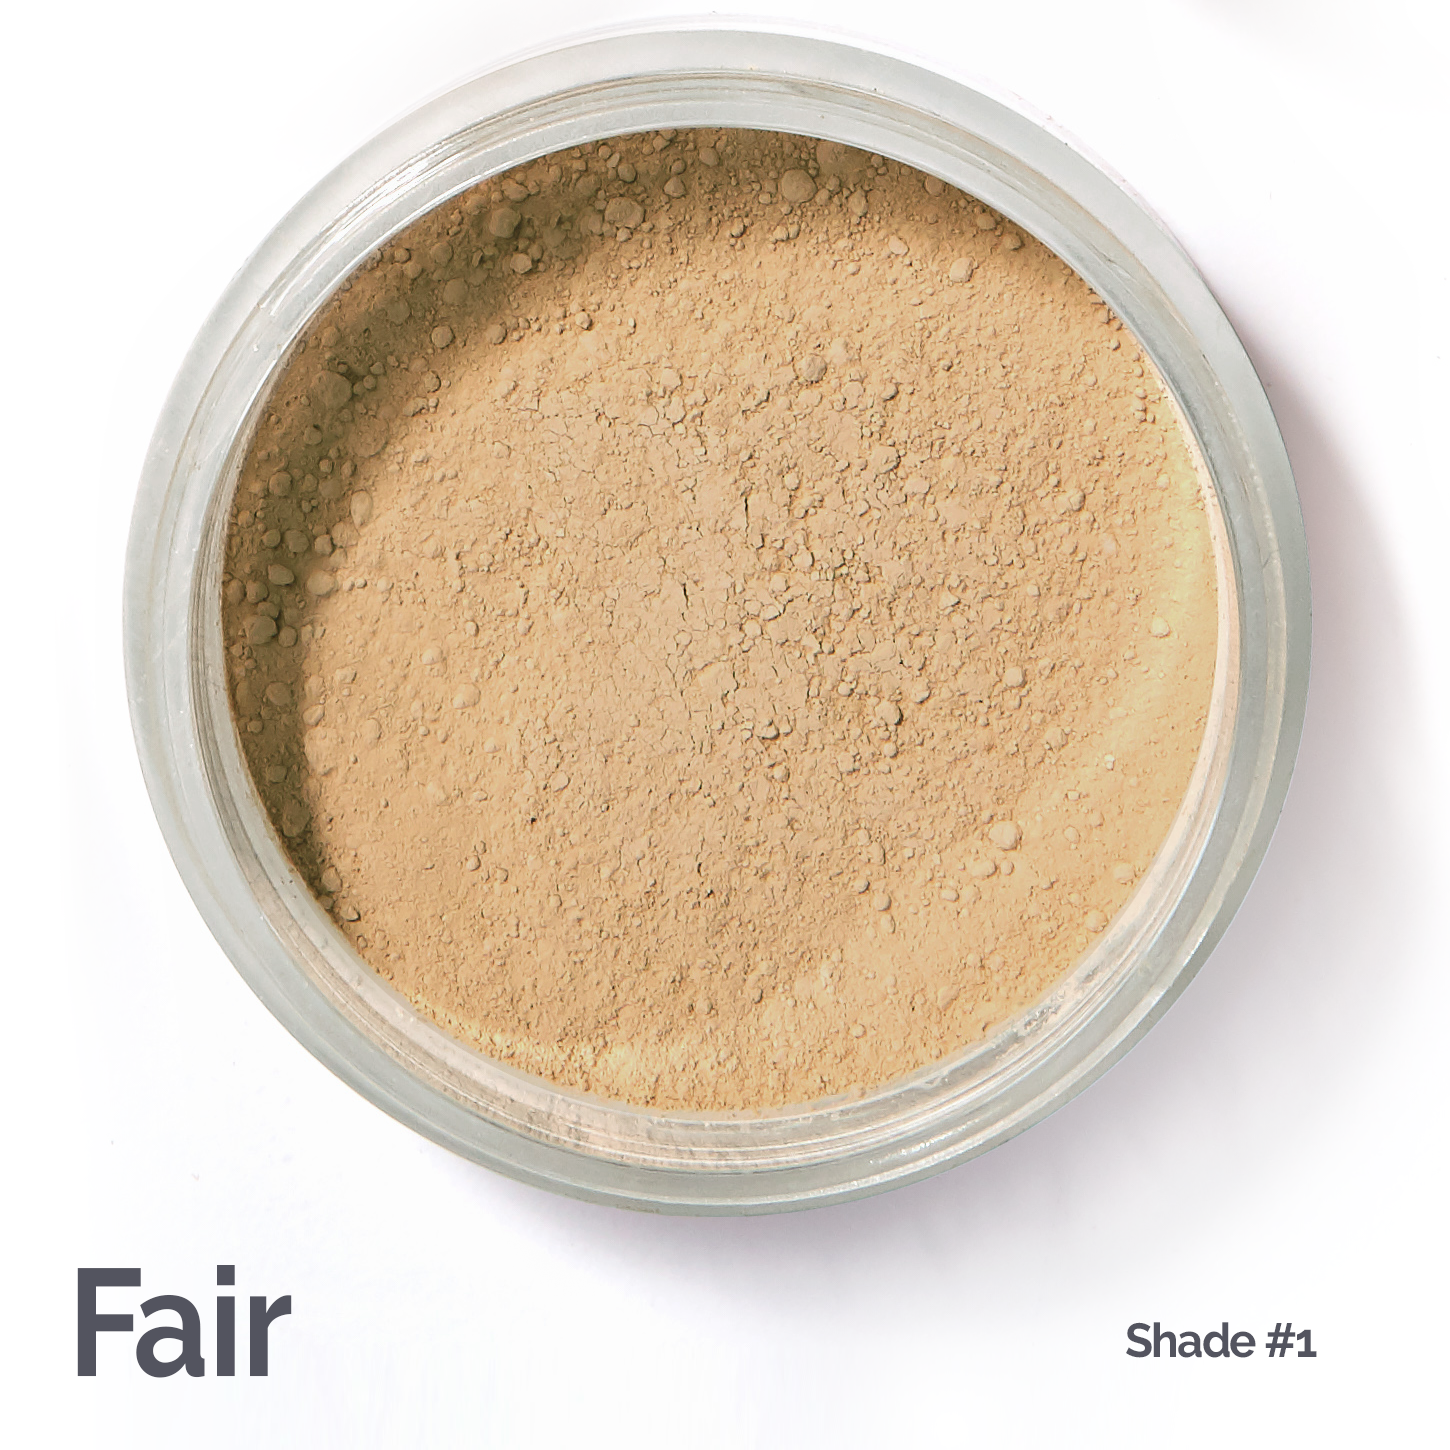 For almost all fair skins #fair